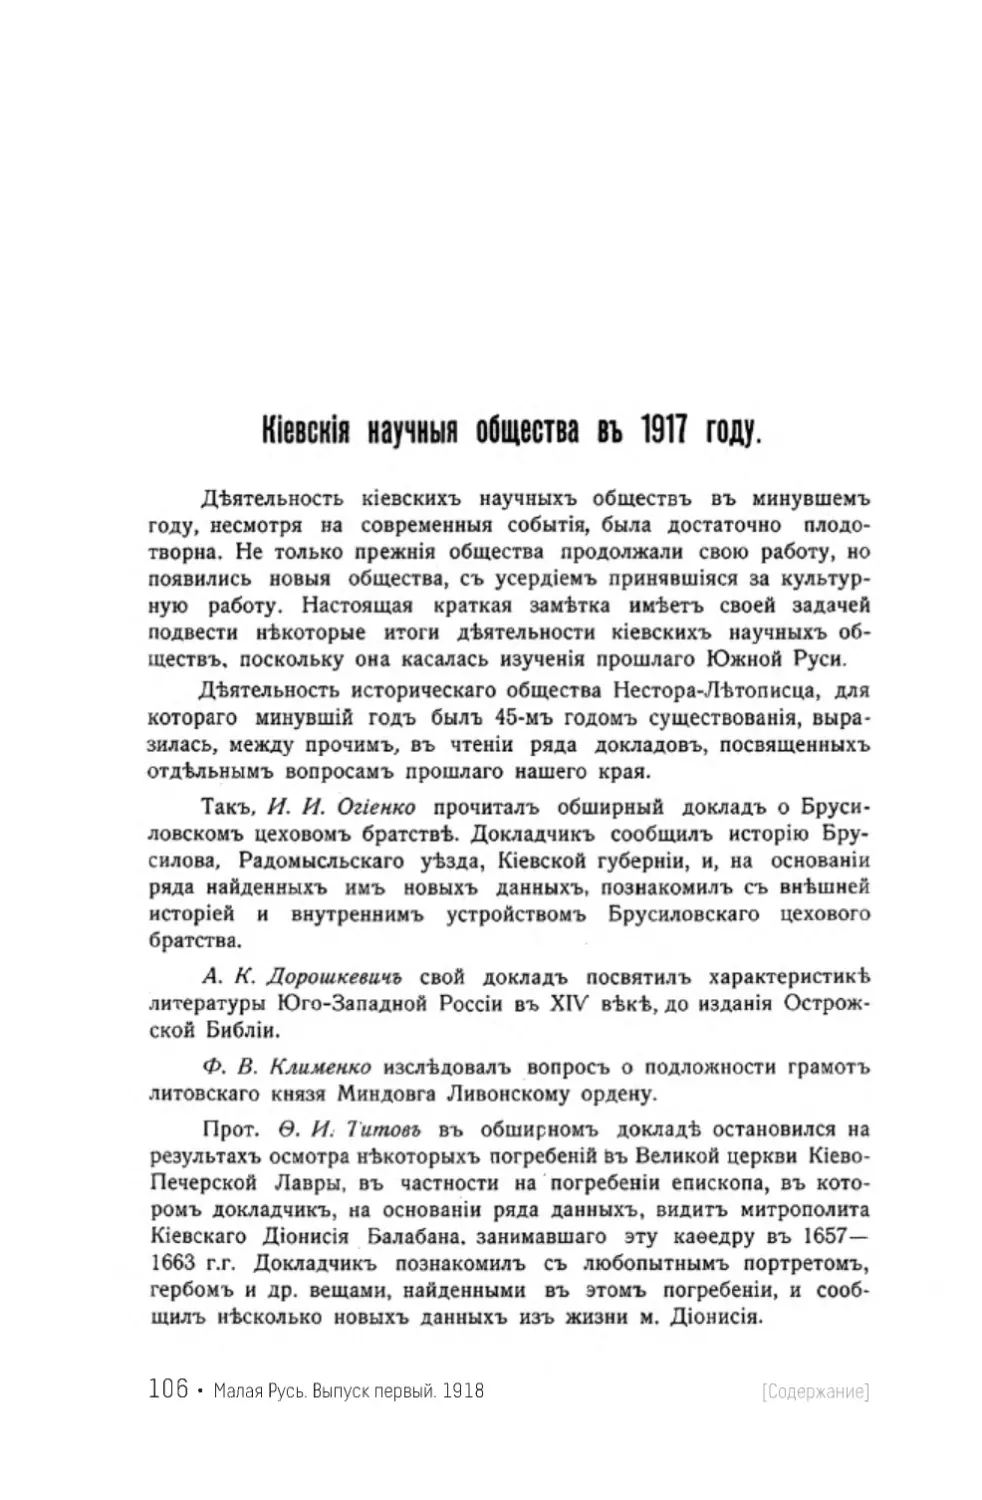 Б. Киевские научные общества в 1917 году